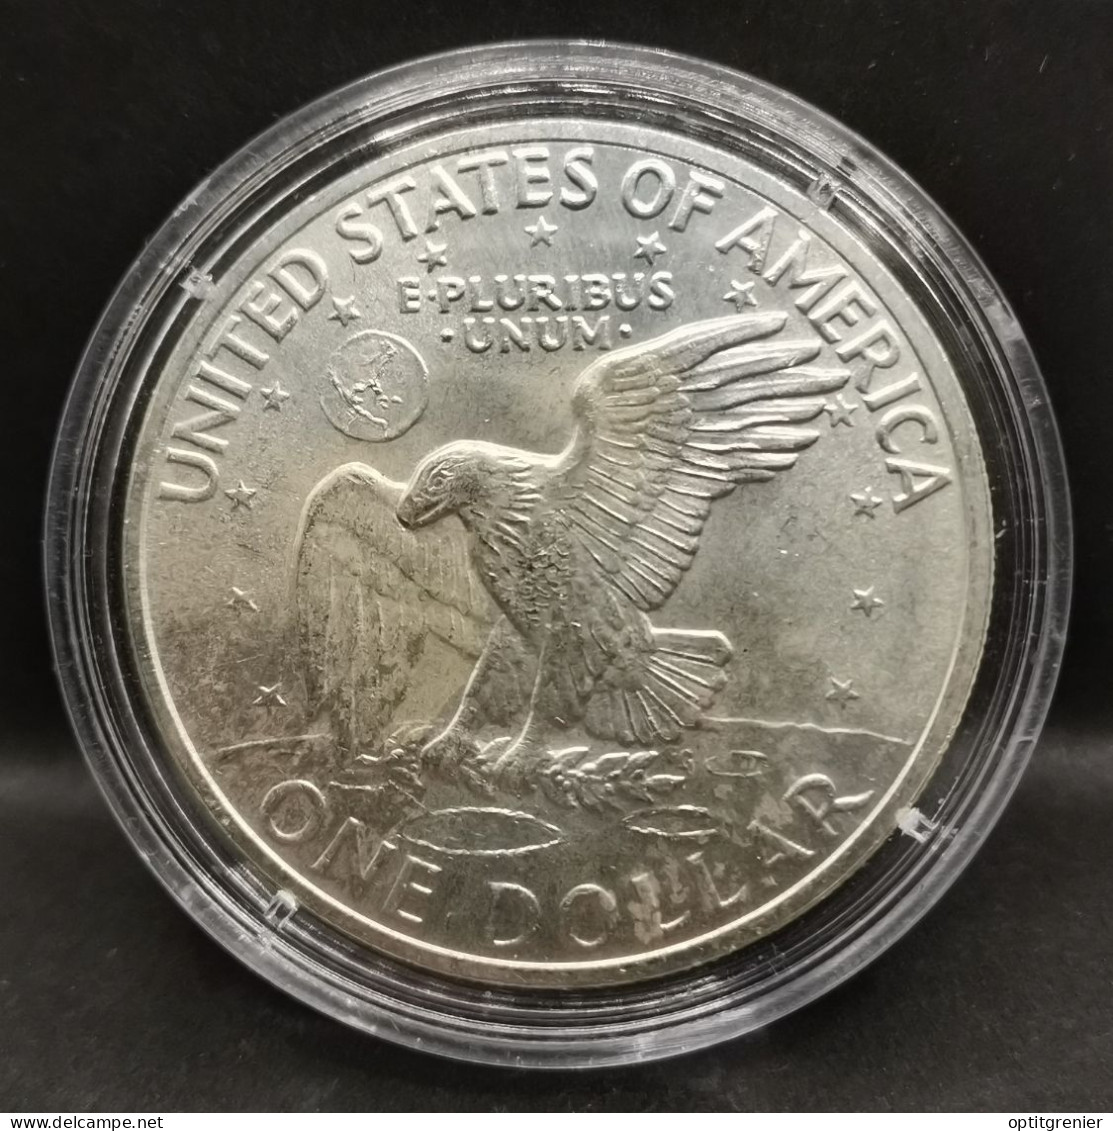 1 DOLLAR ARGENT 1971 S  EISENHOWER USA / SILVER - Sammlungen